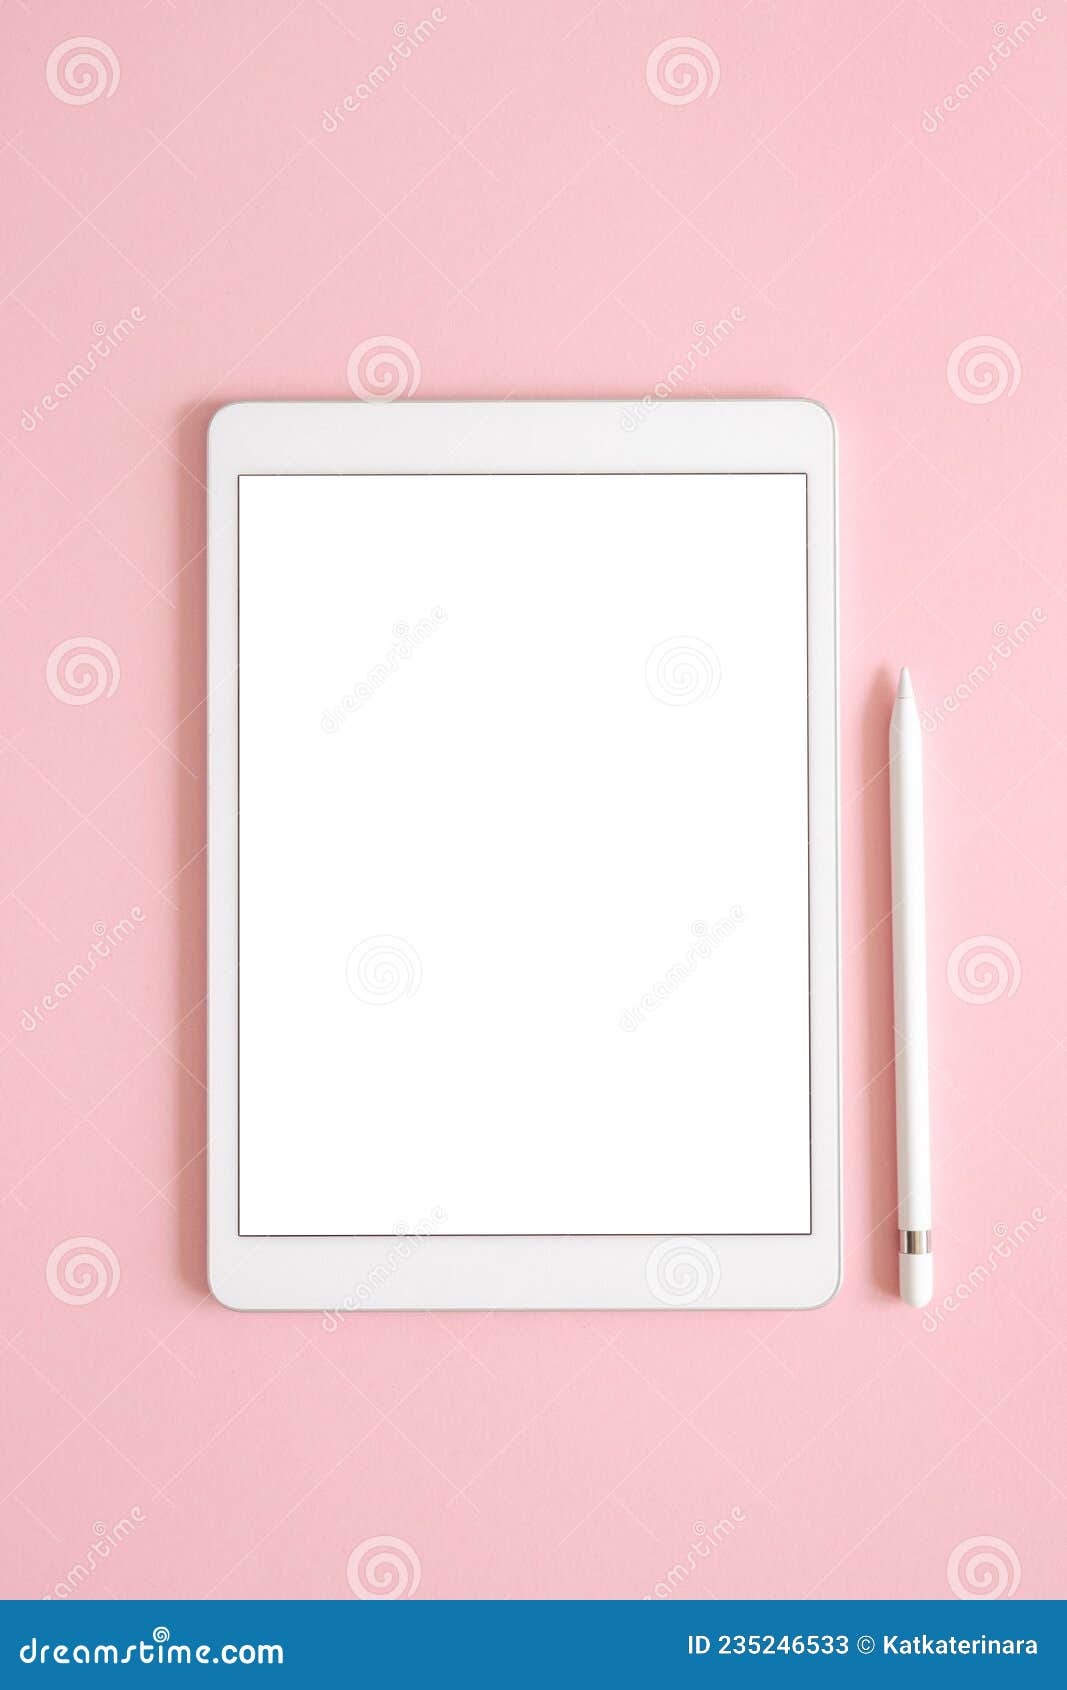 Dibuja una imagen Cañón Imperio Ipad Pro Tablet Con Pantalla Blanca Con Pluma En Color Rosa. Fondo De  Diseño De Oficina Imagen de archivo - Imagen de fondo, colorido: 235246533